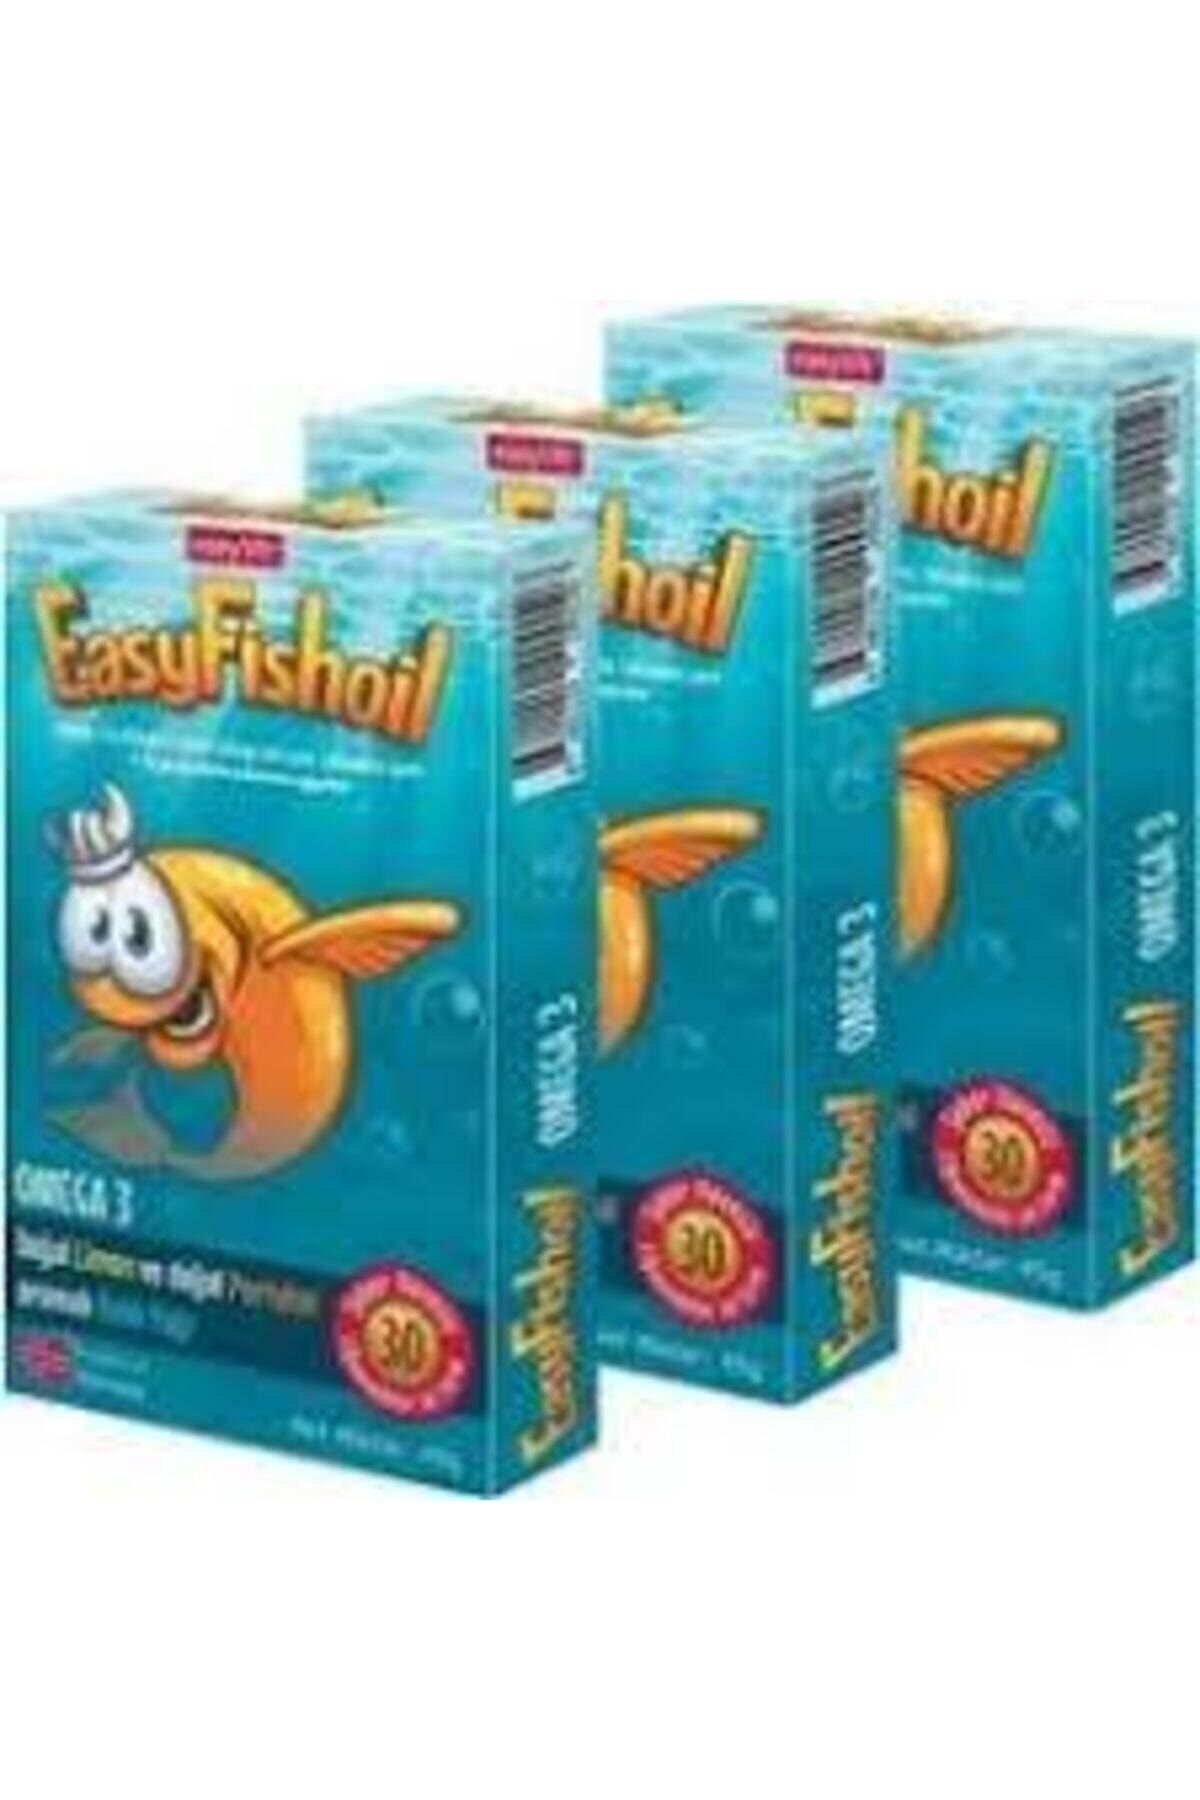 Easy Fishoil Easyfish Oil Omega 3 30tablet Limon Ve Portakallı 3 Adet